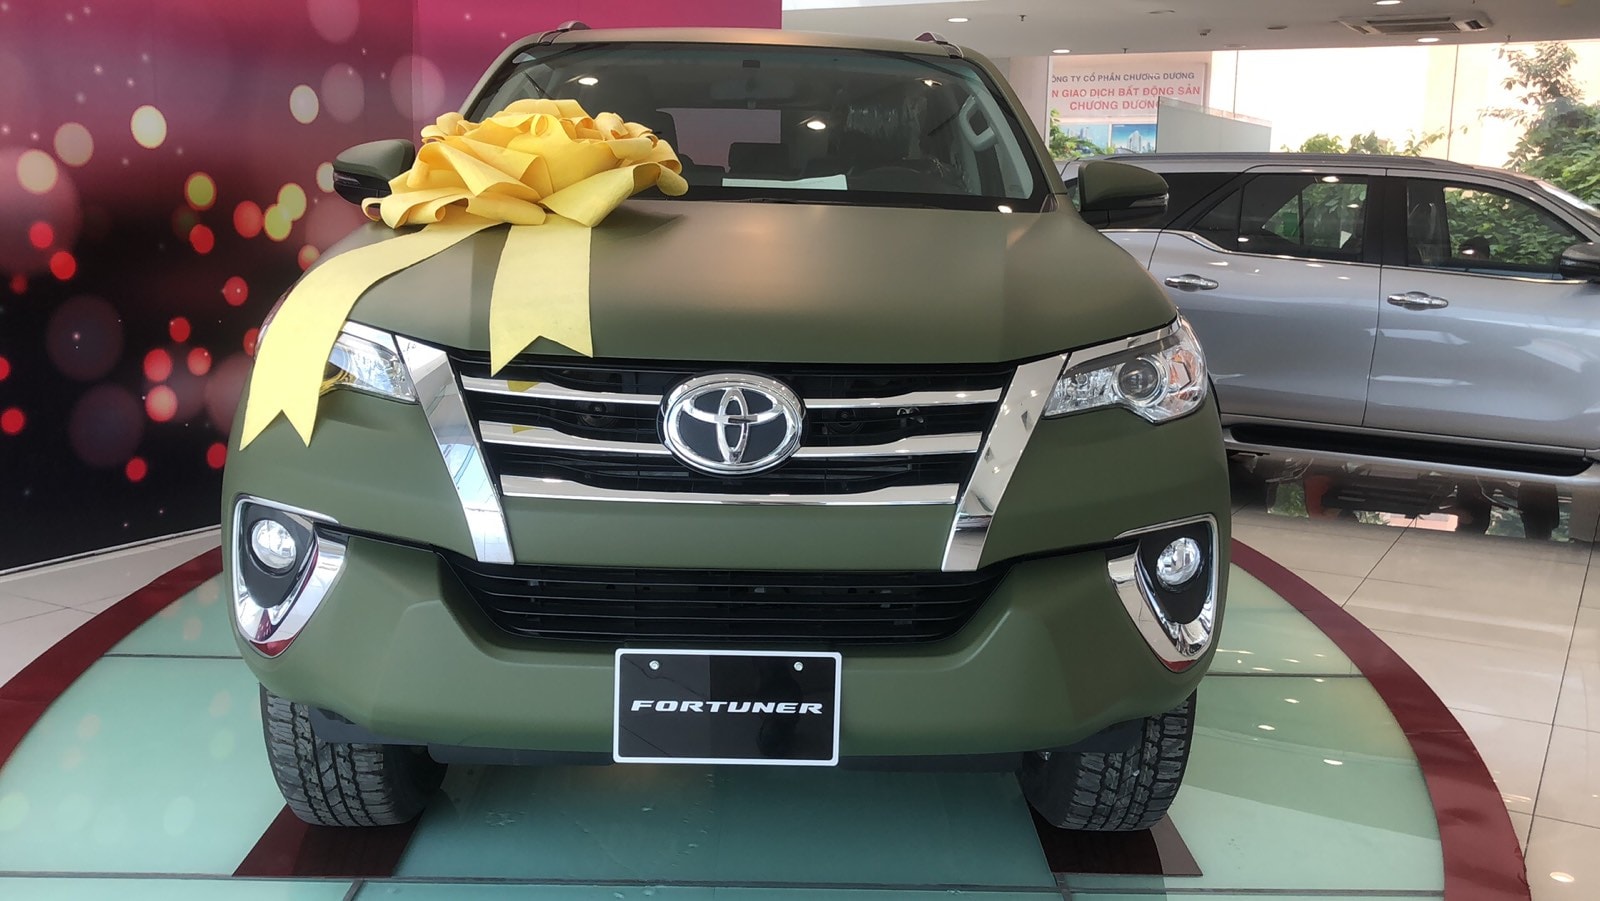 Toyota Fortuner màu sơn lạ xuất hiện tại đại lý Sài Gòn, giá ra biển số hơn 1,1 tỷ đồng - Ảnh 2.